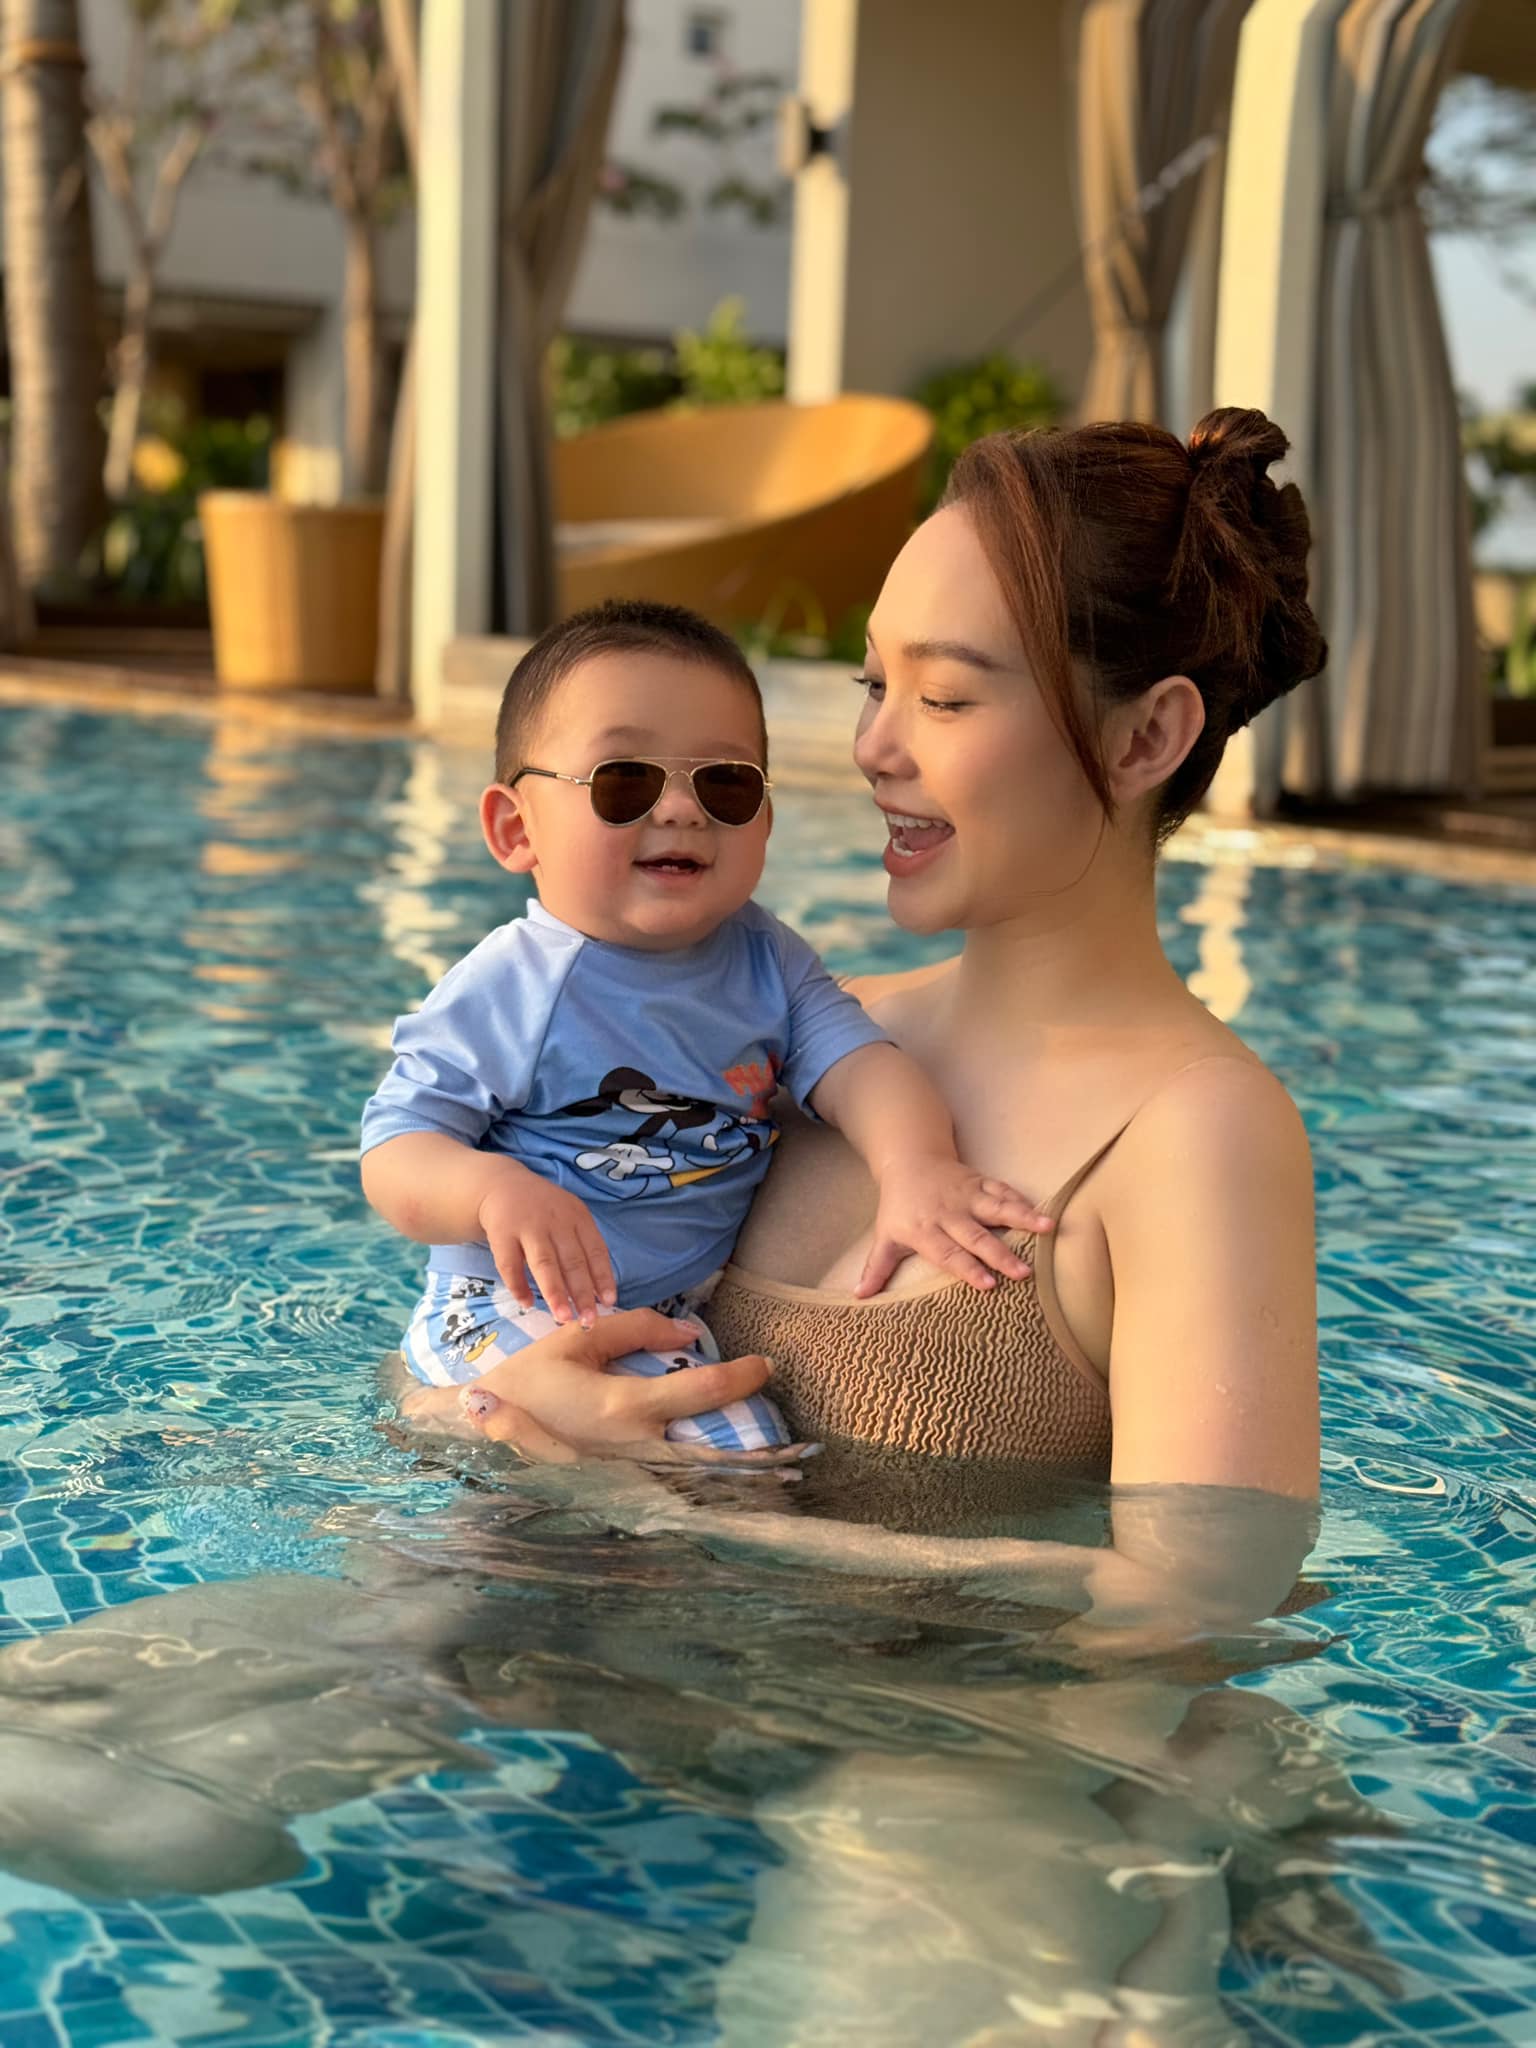 Con trai Minh Hằng 'gây bão' MXH với bức hình trong hồ bơi cùng mẹ, chưa đầy 1 tuổi đã ra dáng soái ca - ảnh 1